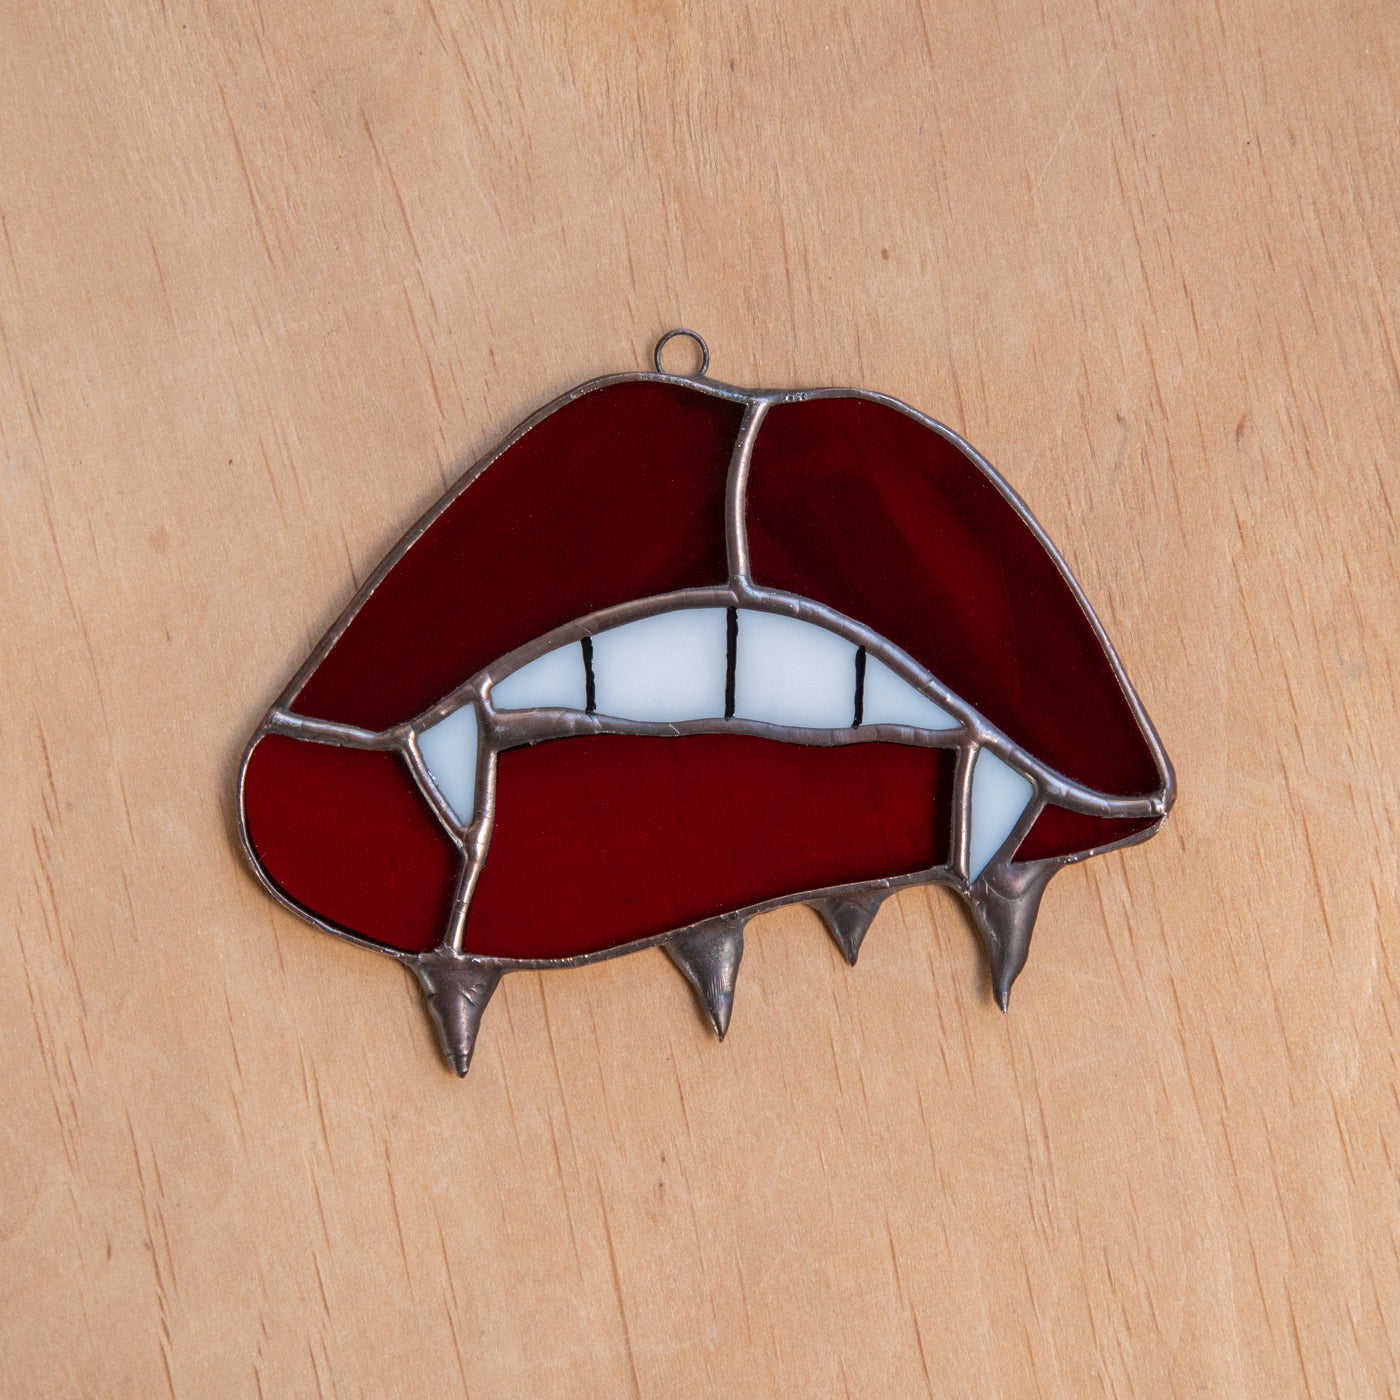 Vamp lips stained glass suncatcher for spooky Halloween decor